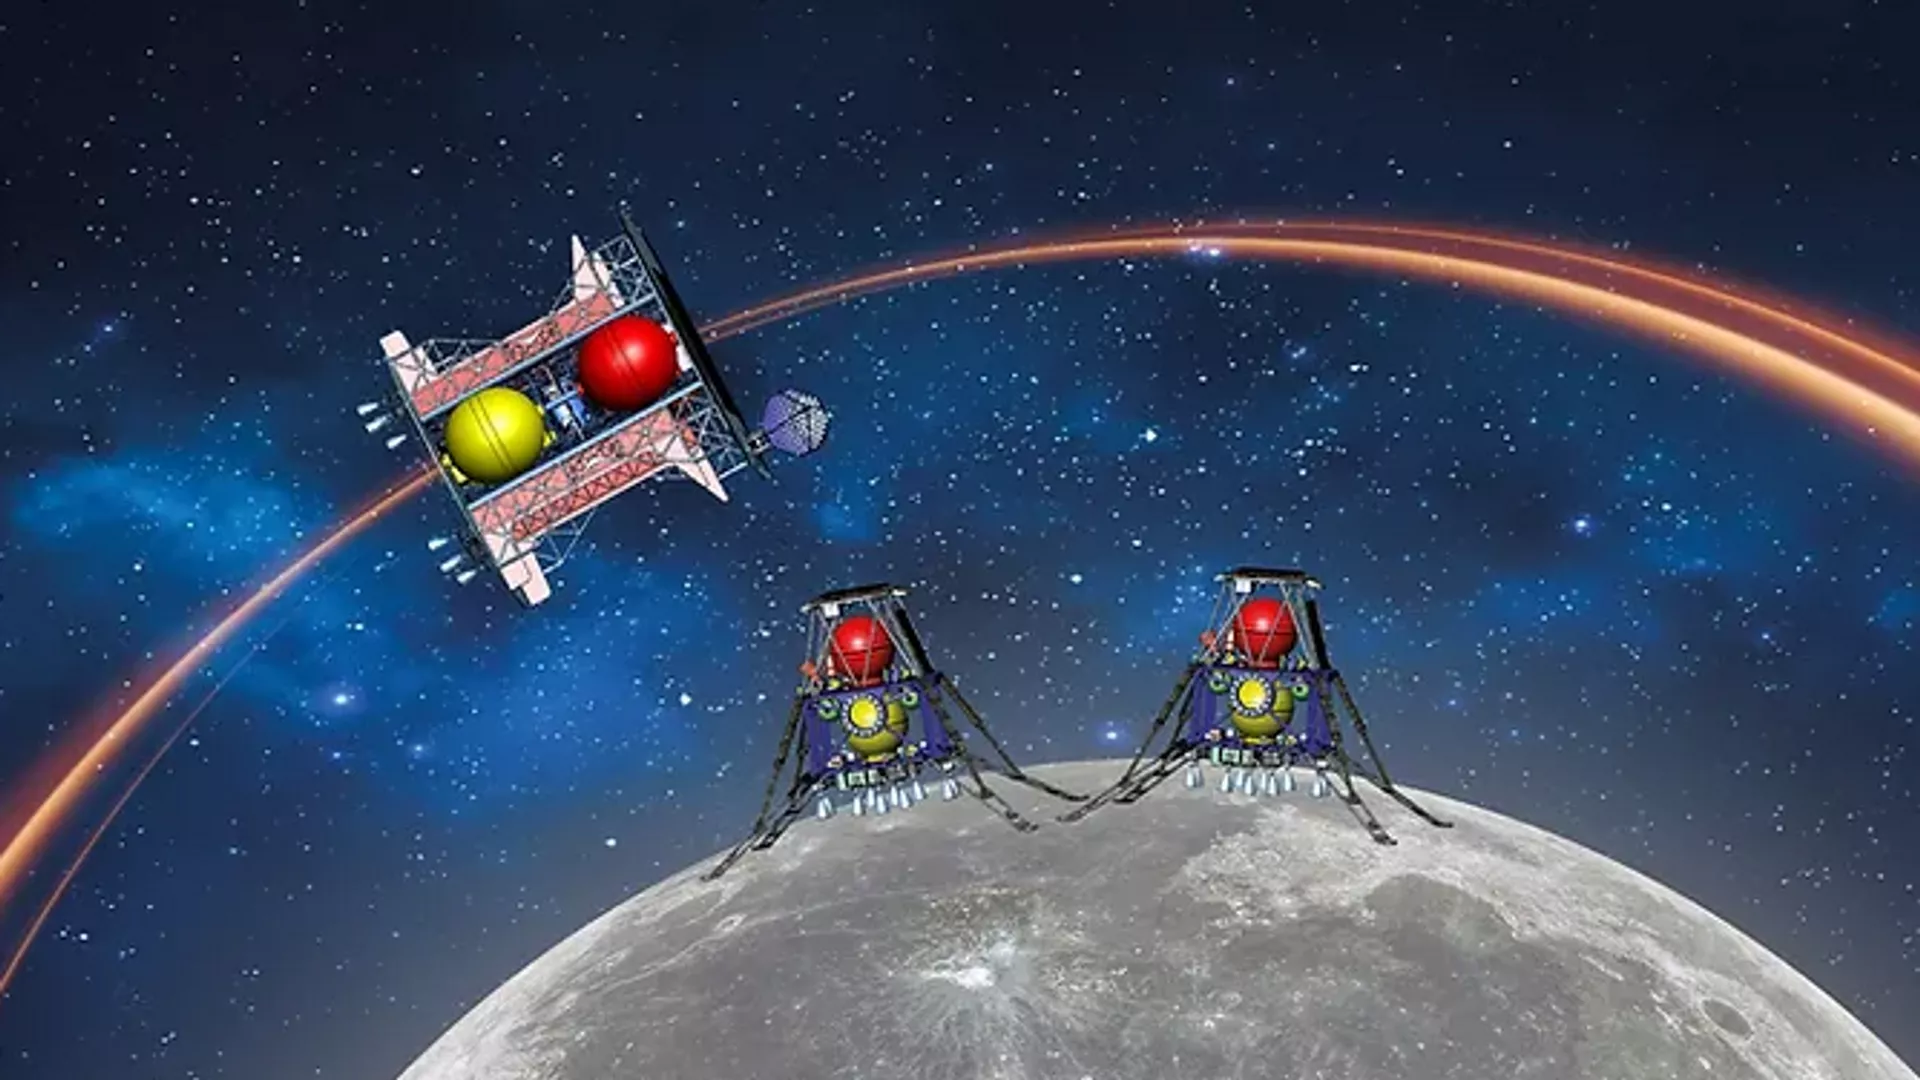  La Agencia Espacial de Israel y la NASA cooperarán en la misión lunar Beresheet2